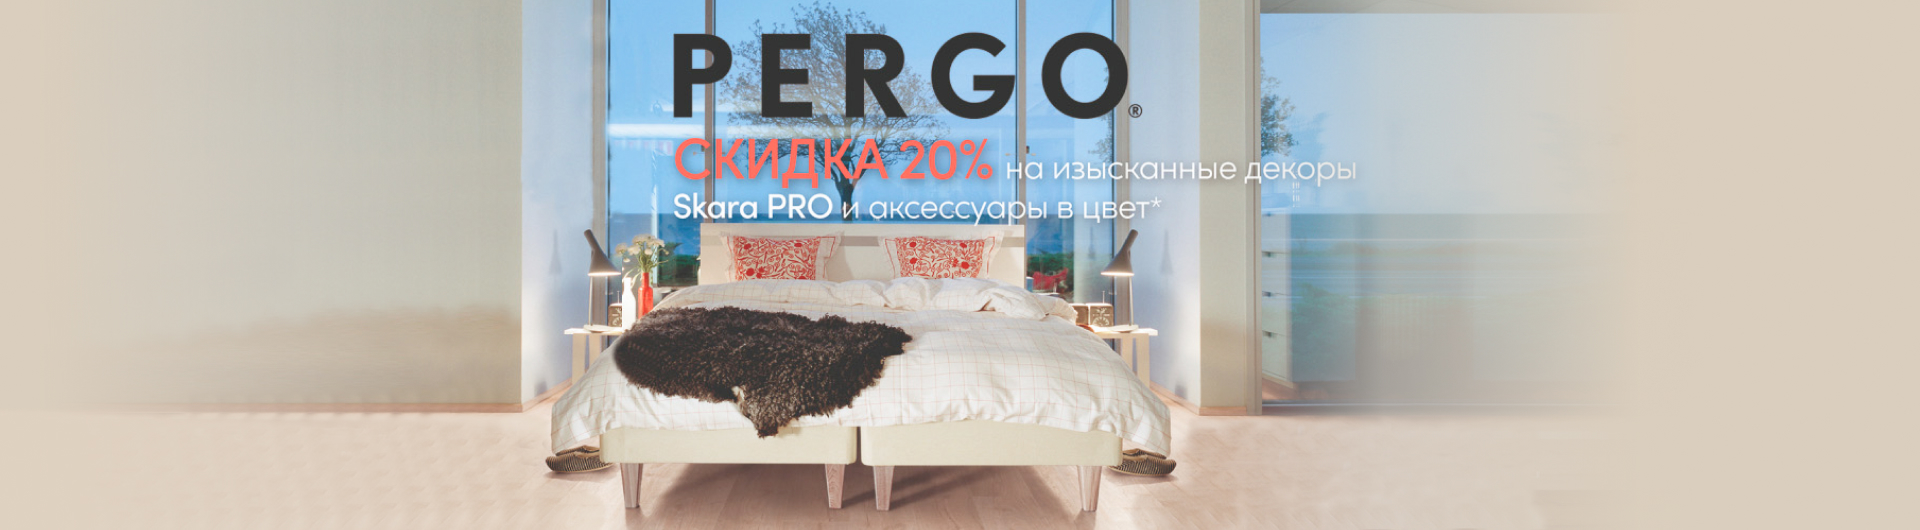 Pergo-Skara-pro